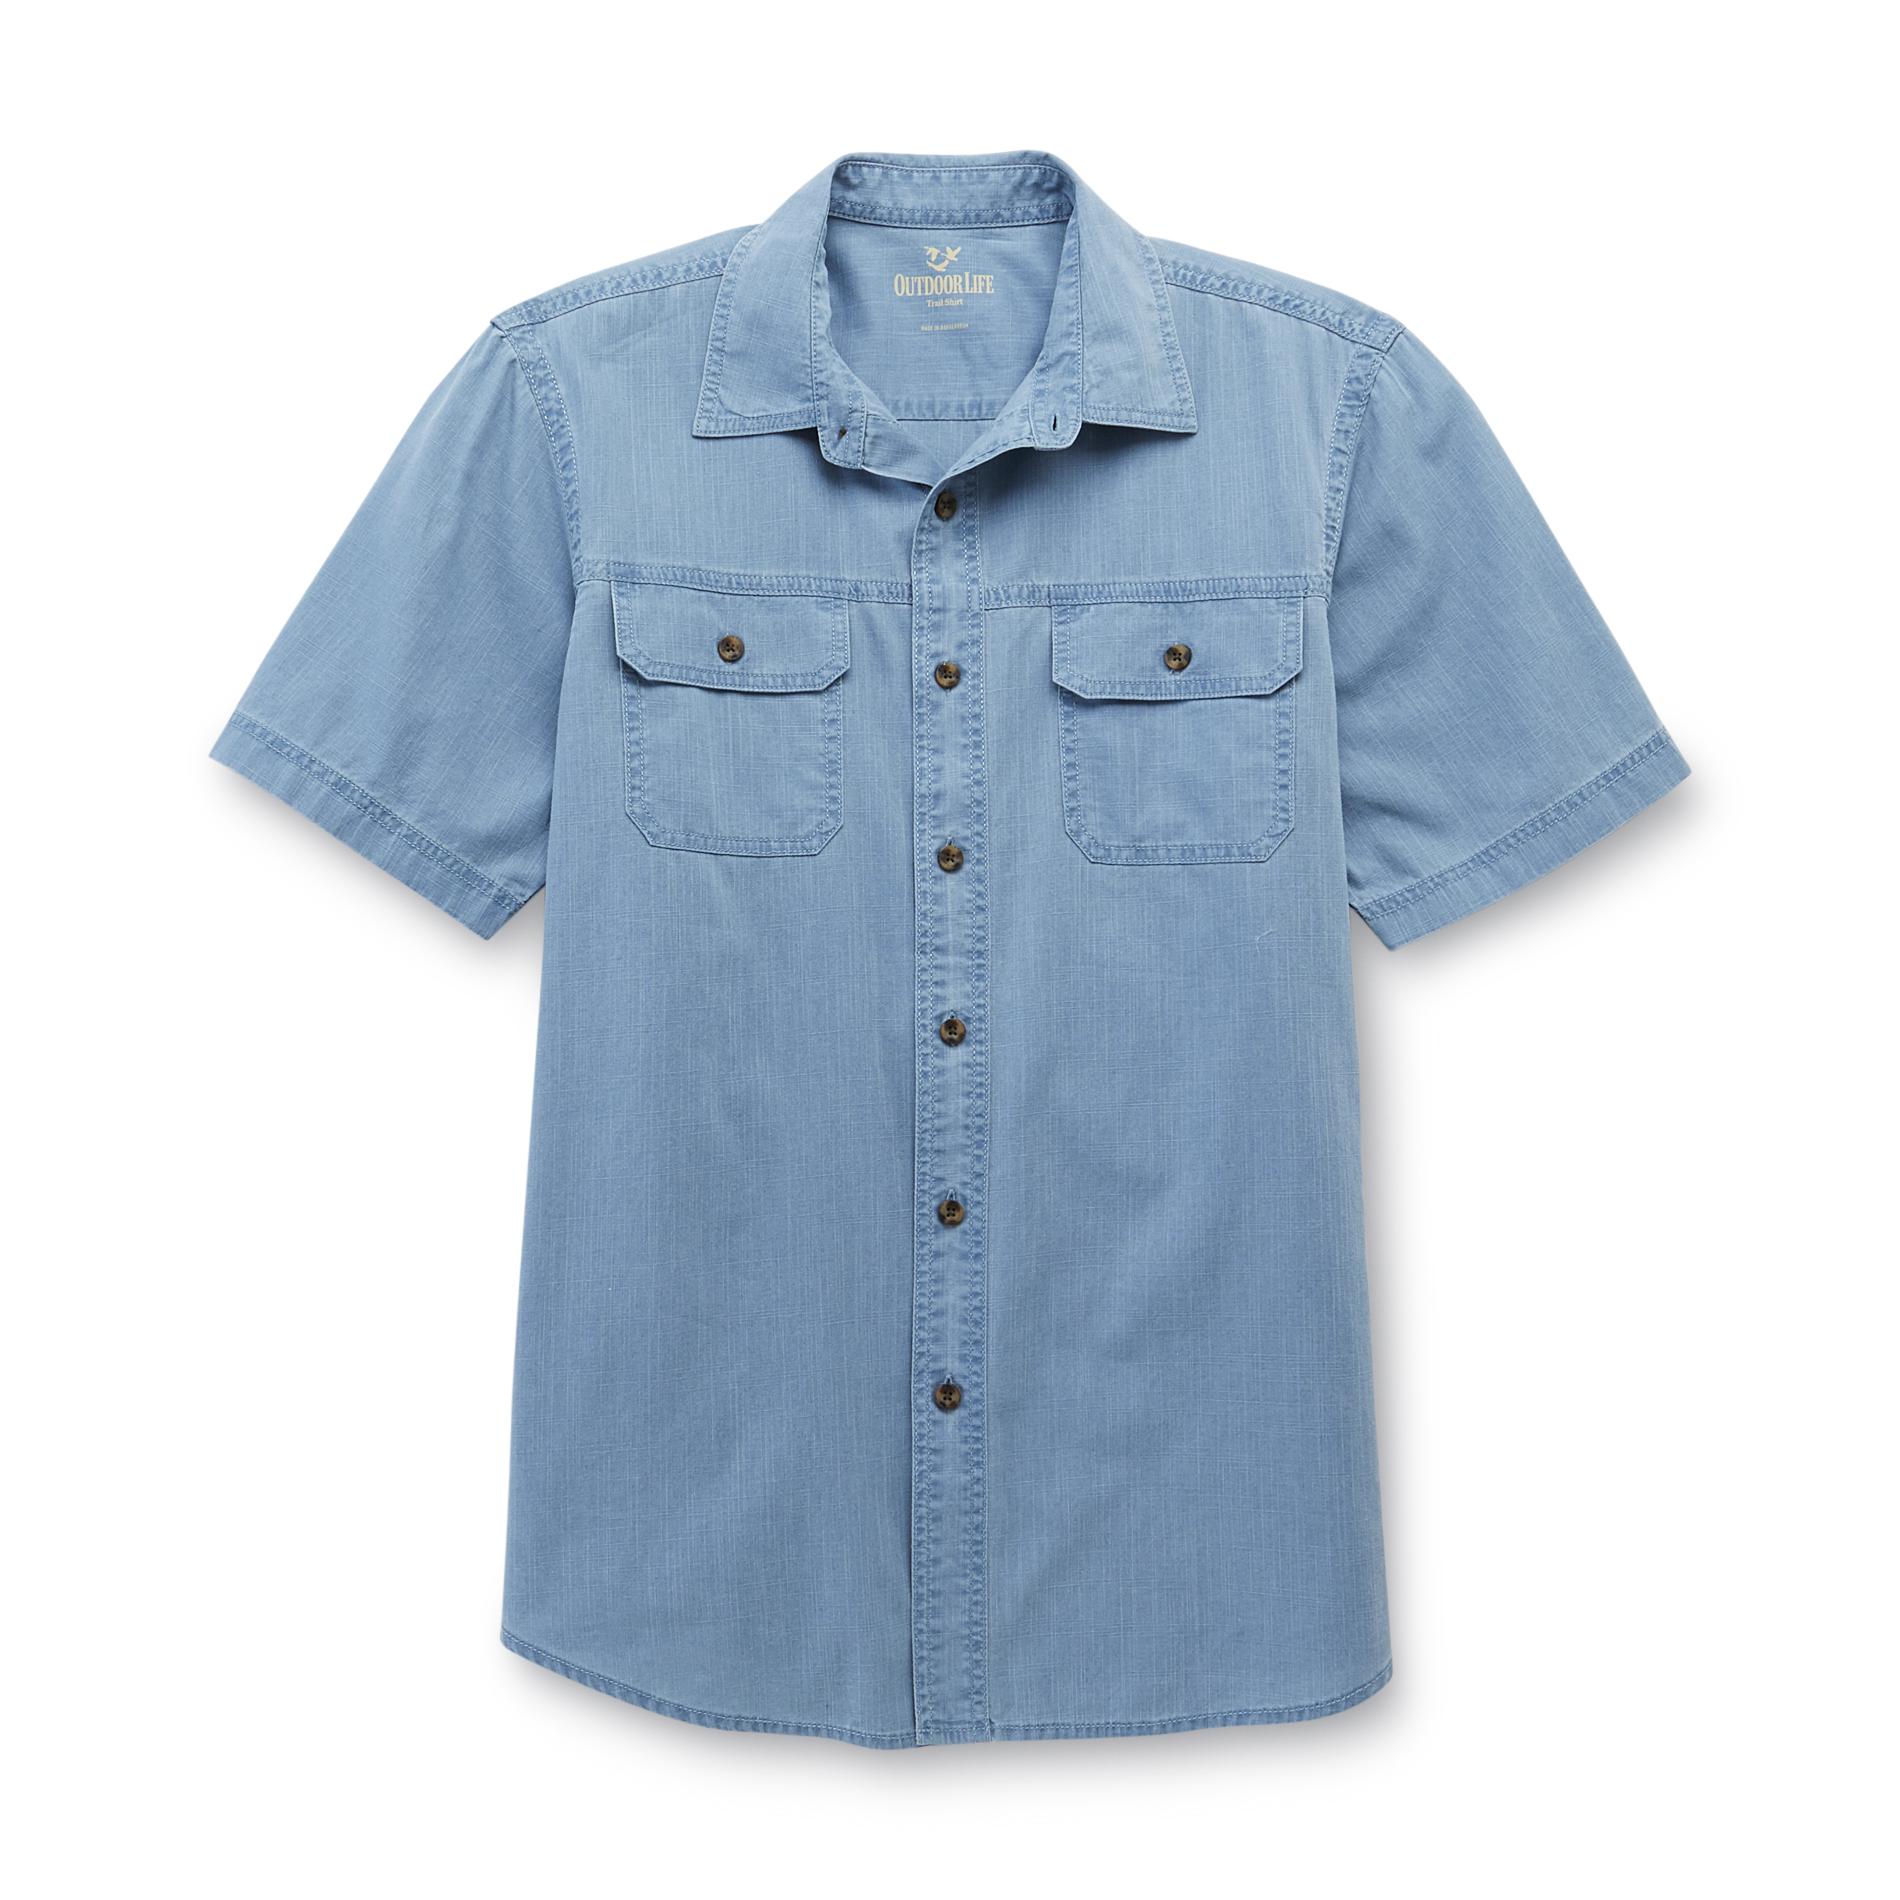 Outdoor Life Men's Big & Tall Short-Sleeve Crosshatch Shirt